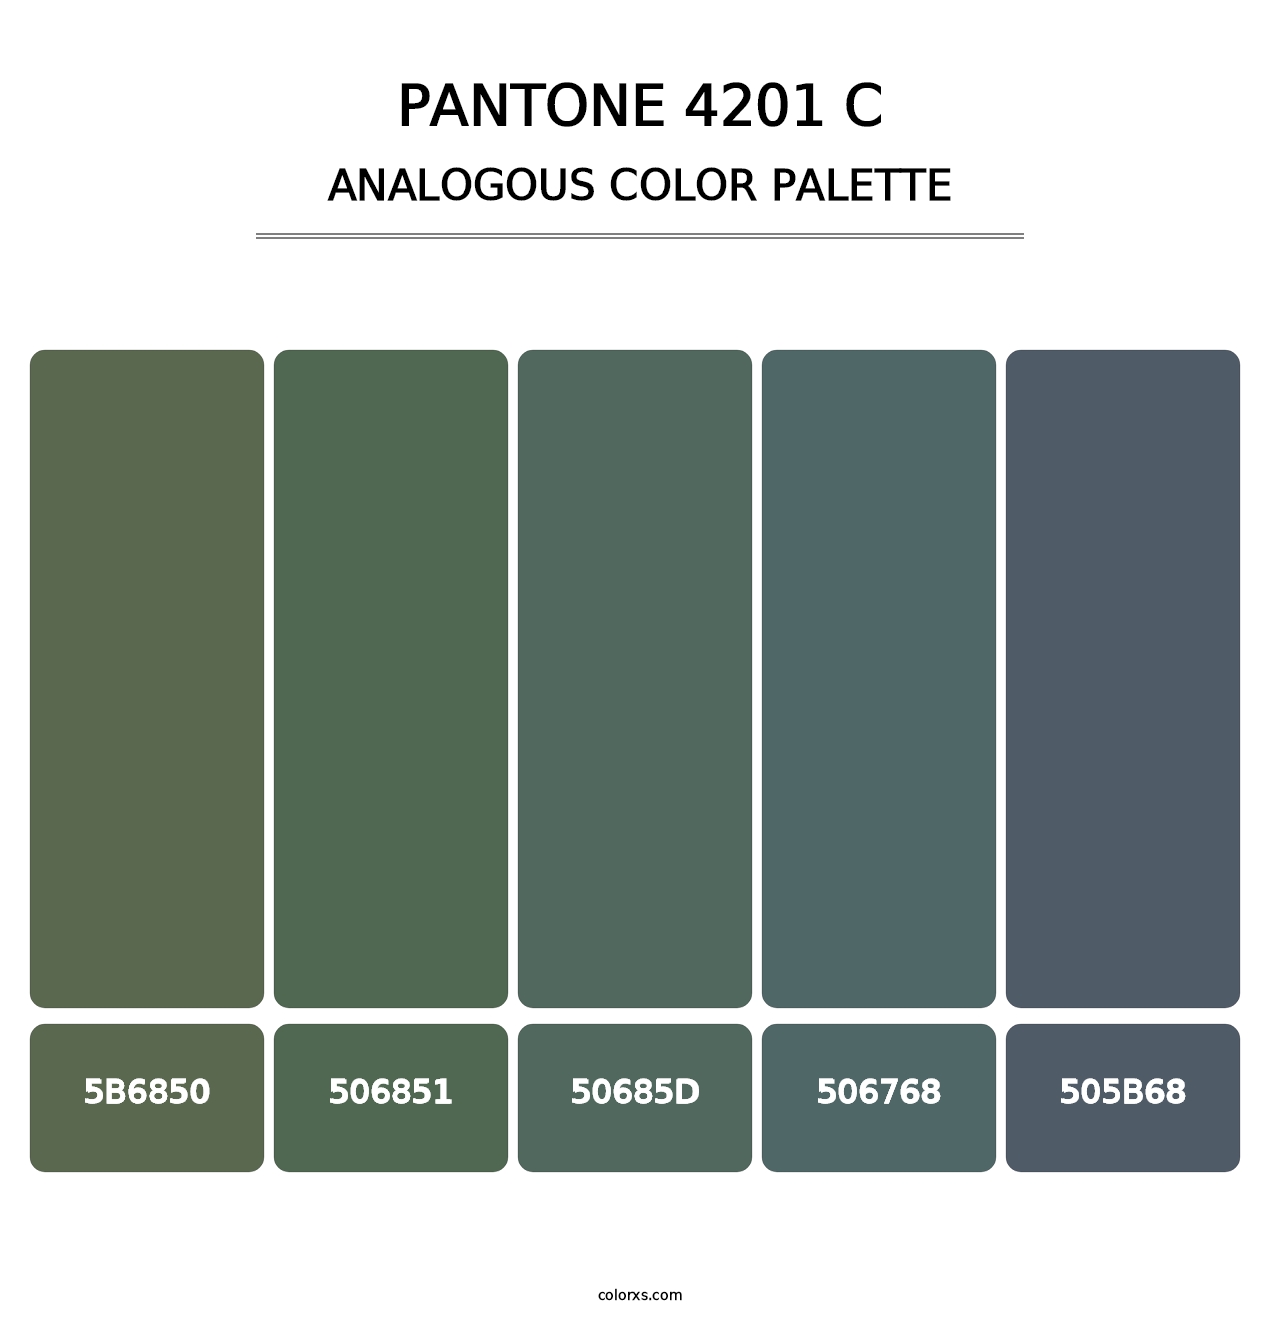 PANTONE 4201 C - Analogous Color Palette